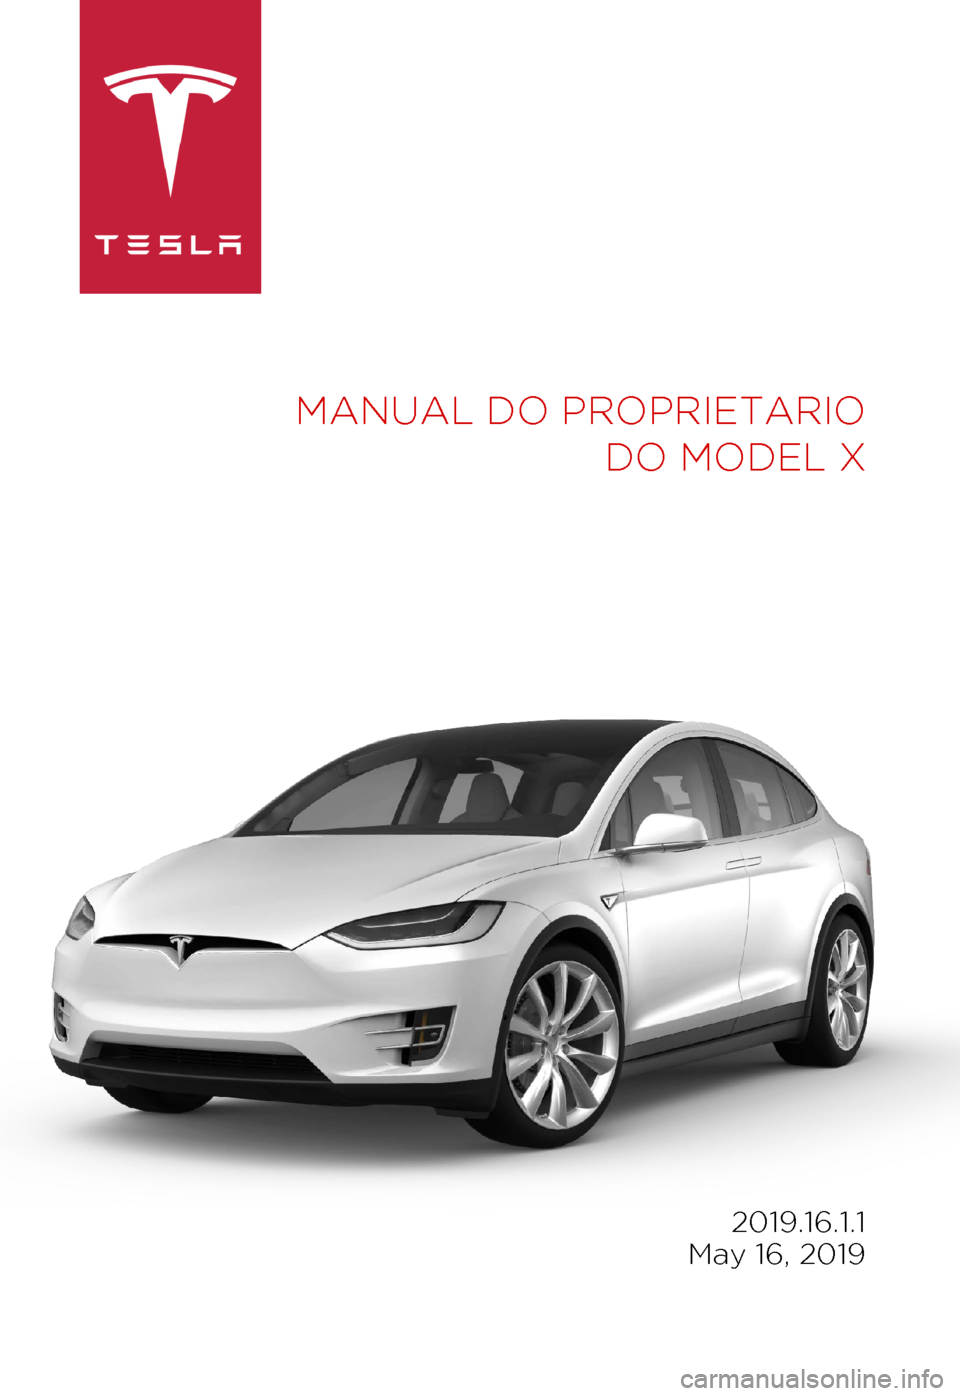 TESLA MODEL X 2019  Manual do proprietário (in Portuguese) MANUAL DO PROPRIETARIO
 
DO MODEL X 2019.16.1.1
 
May 16, 2019 